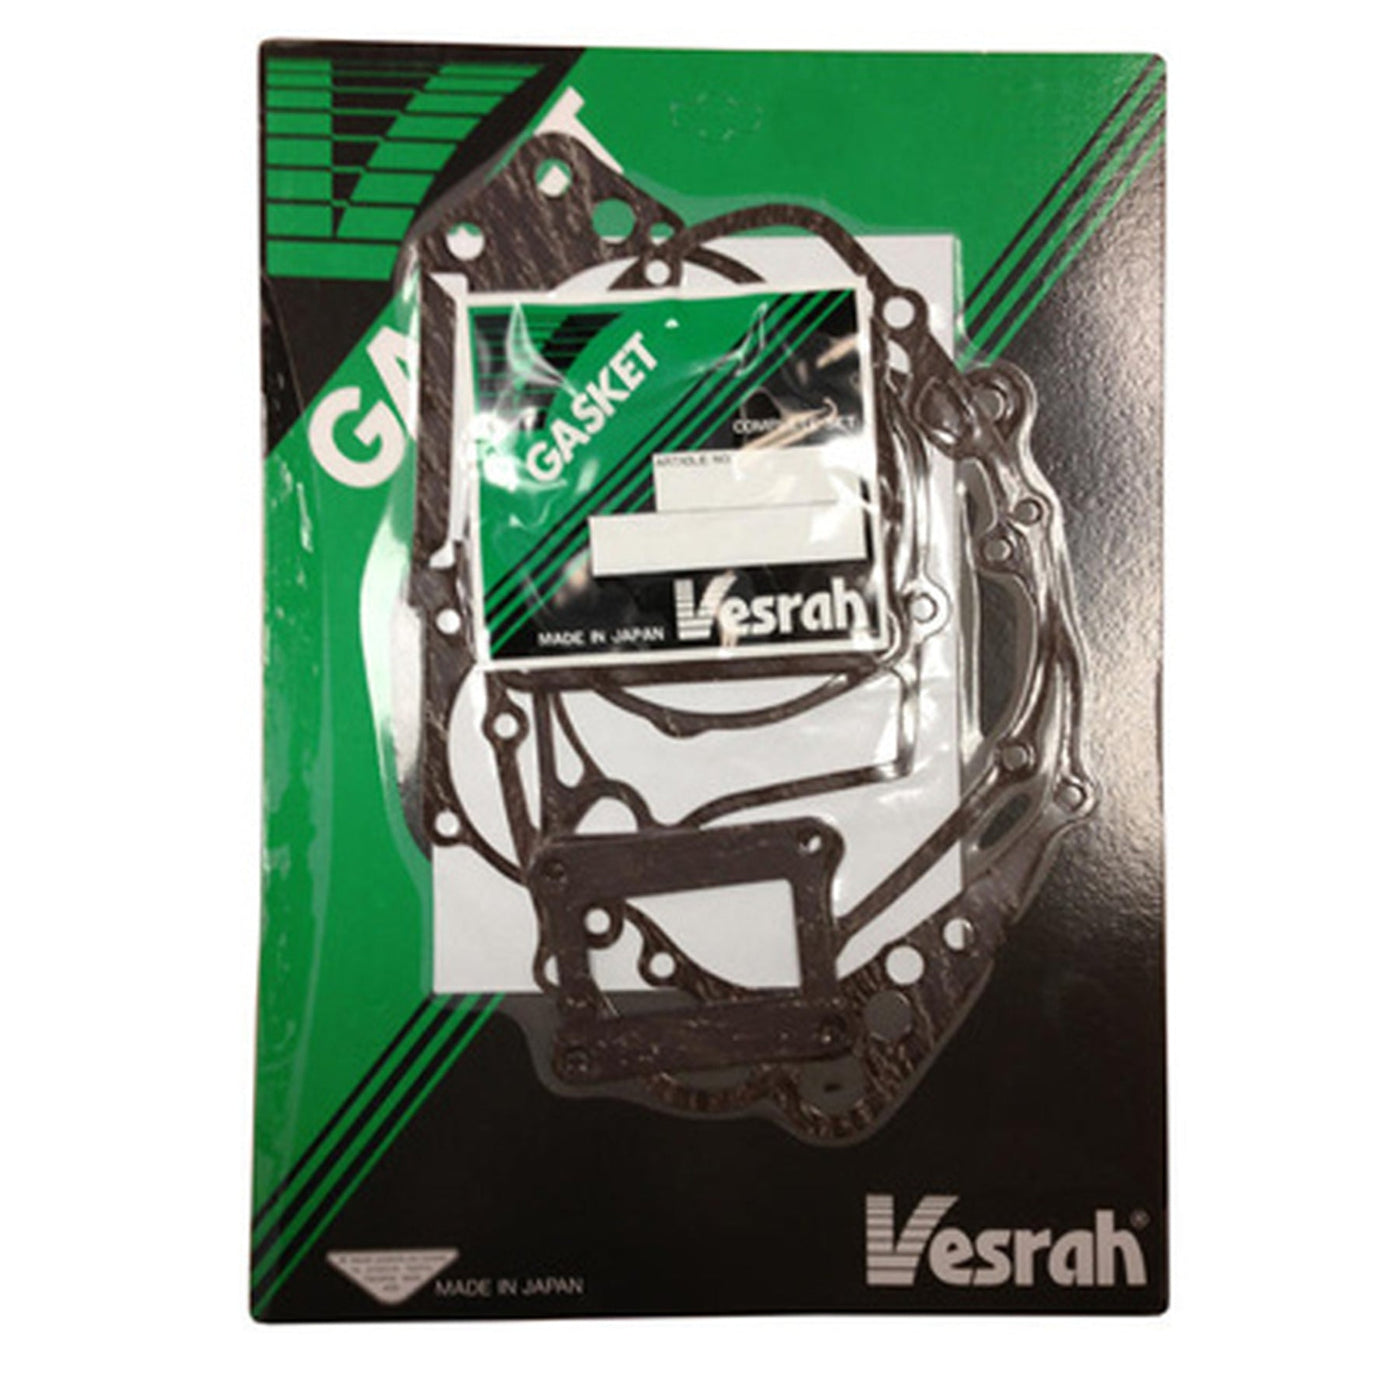 Vesrah VG-3052 Complete Gasket Set #VG-3052